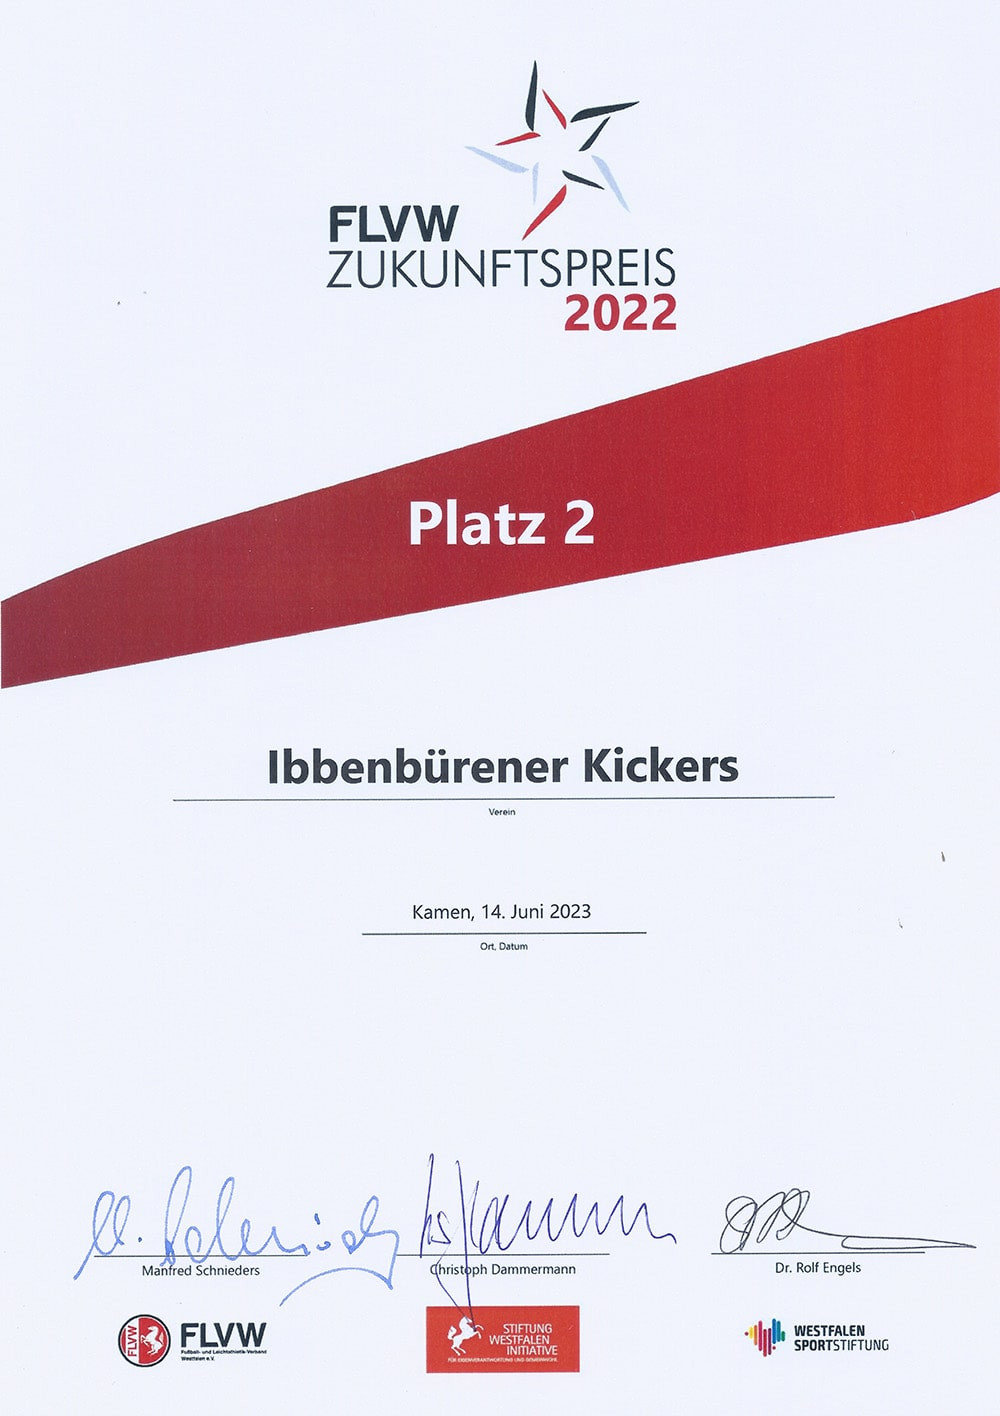 Abbildung zeigt: FLVW Zukunftspreis 2022: Urkunde für die Ibbenbürener Kickers